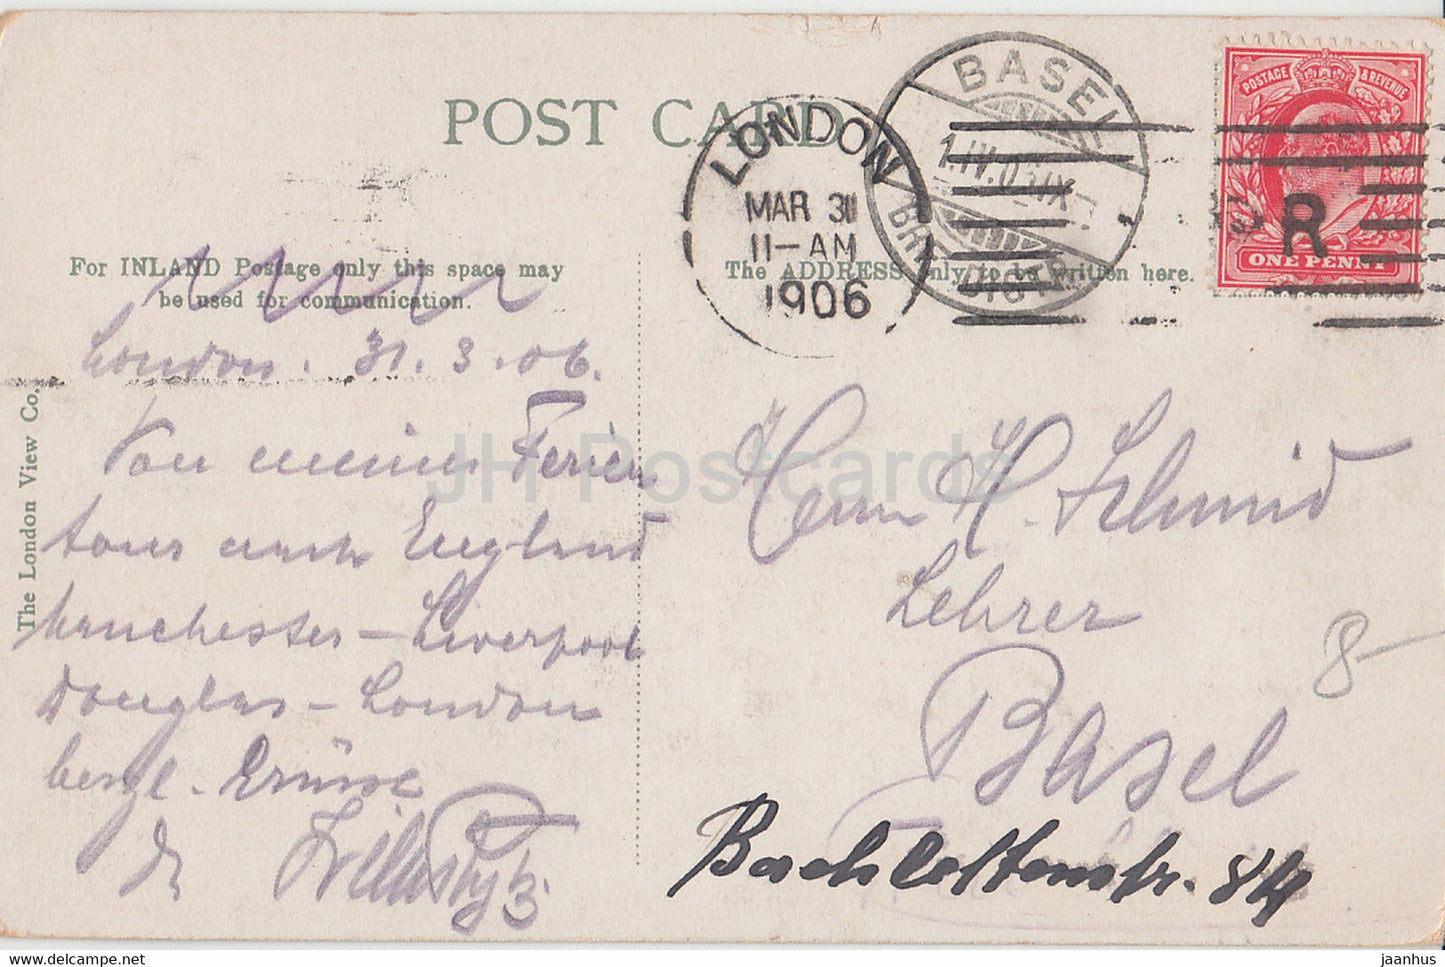 Londres - Cathédrale Saint-Paul depuis la rivière - bateau à vapeur - carte postale ancienne - 1906 - Angleterre - Royaume-Uni - utilisé